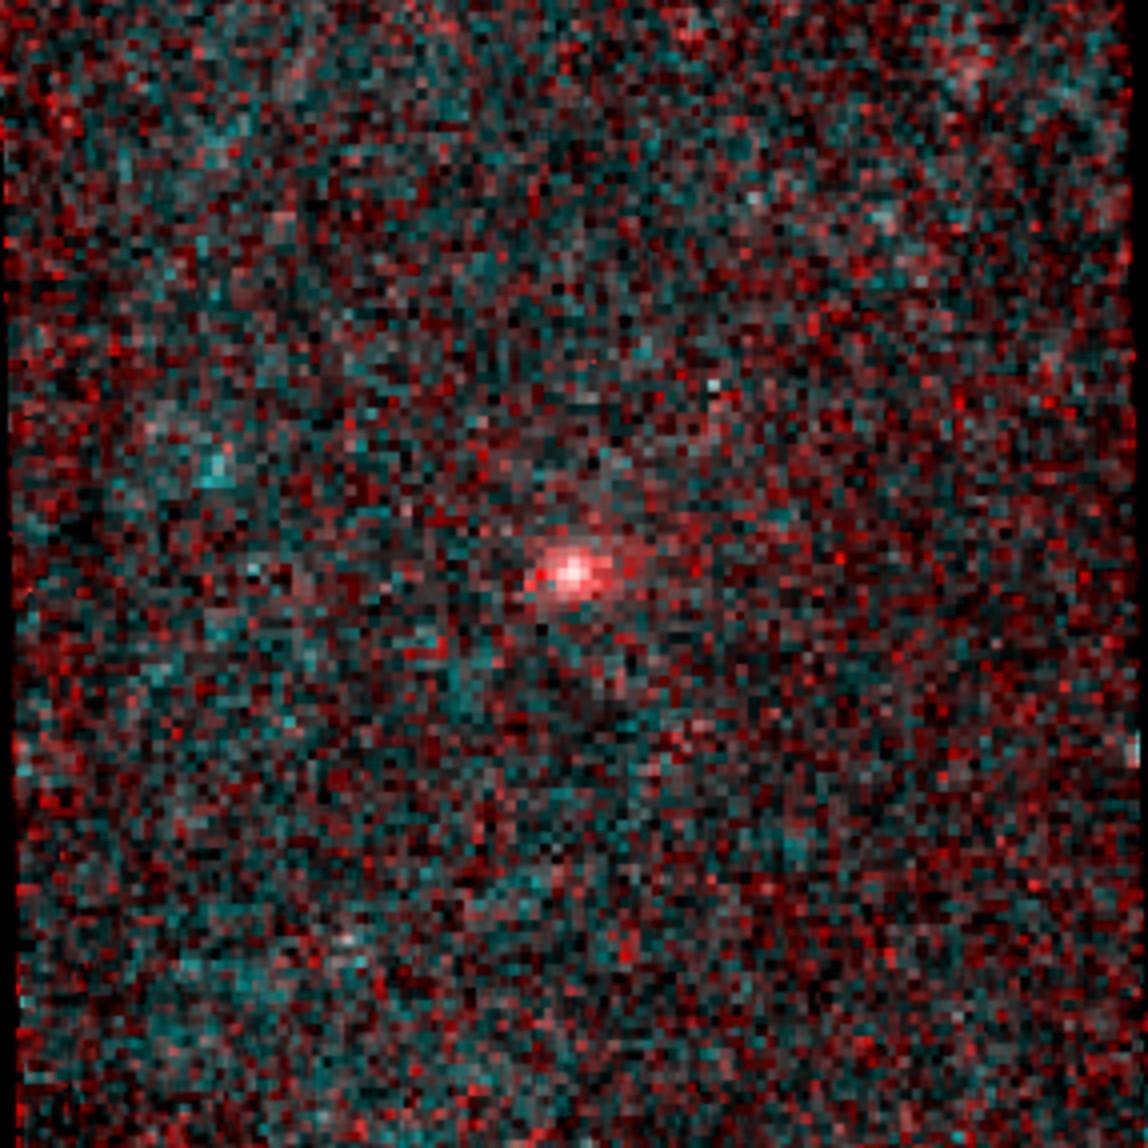 Der Komet C/2014 C3 (NEOWISE) Infrarotbild